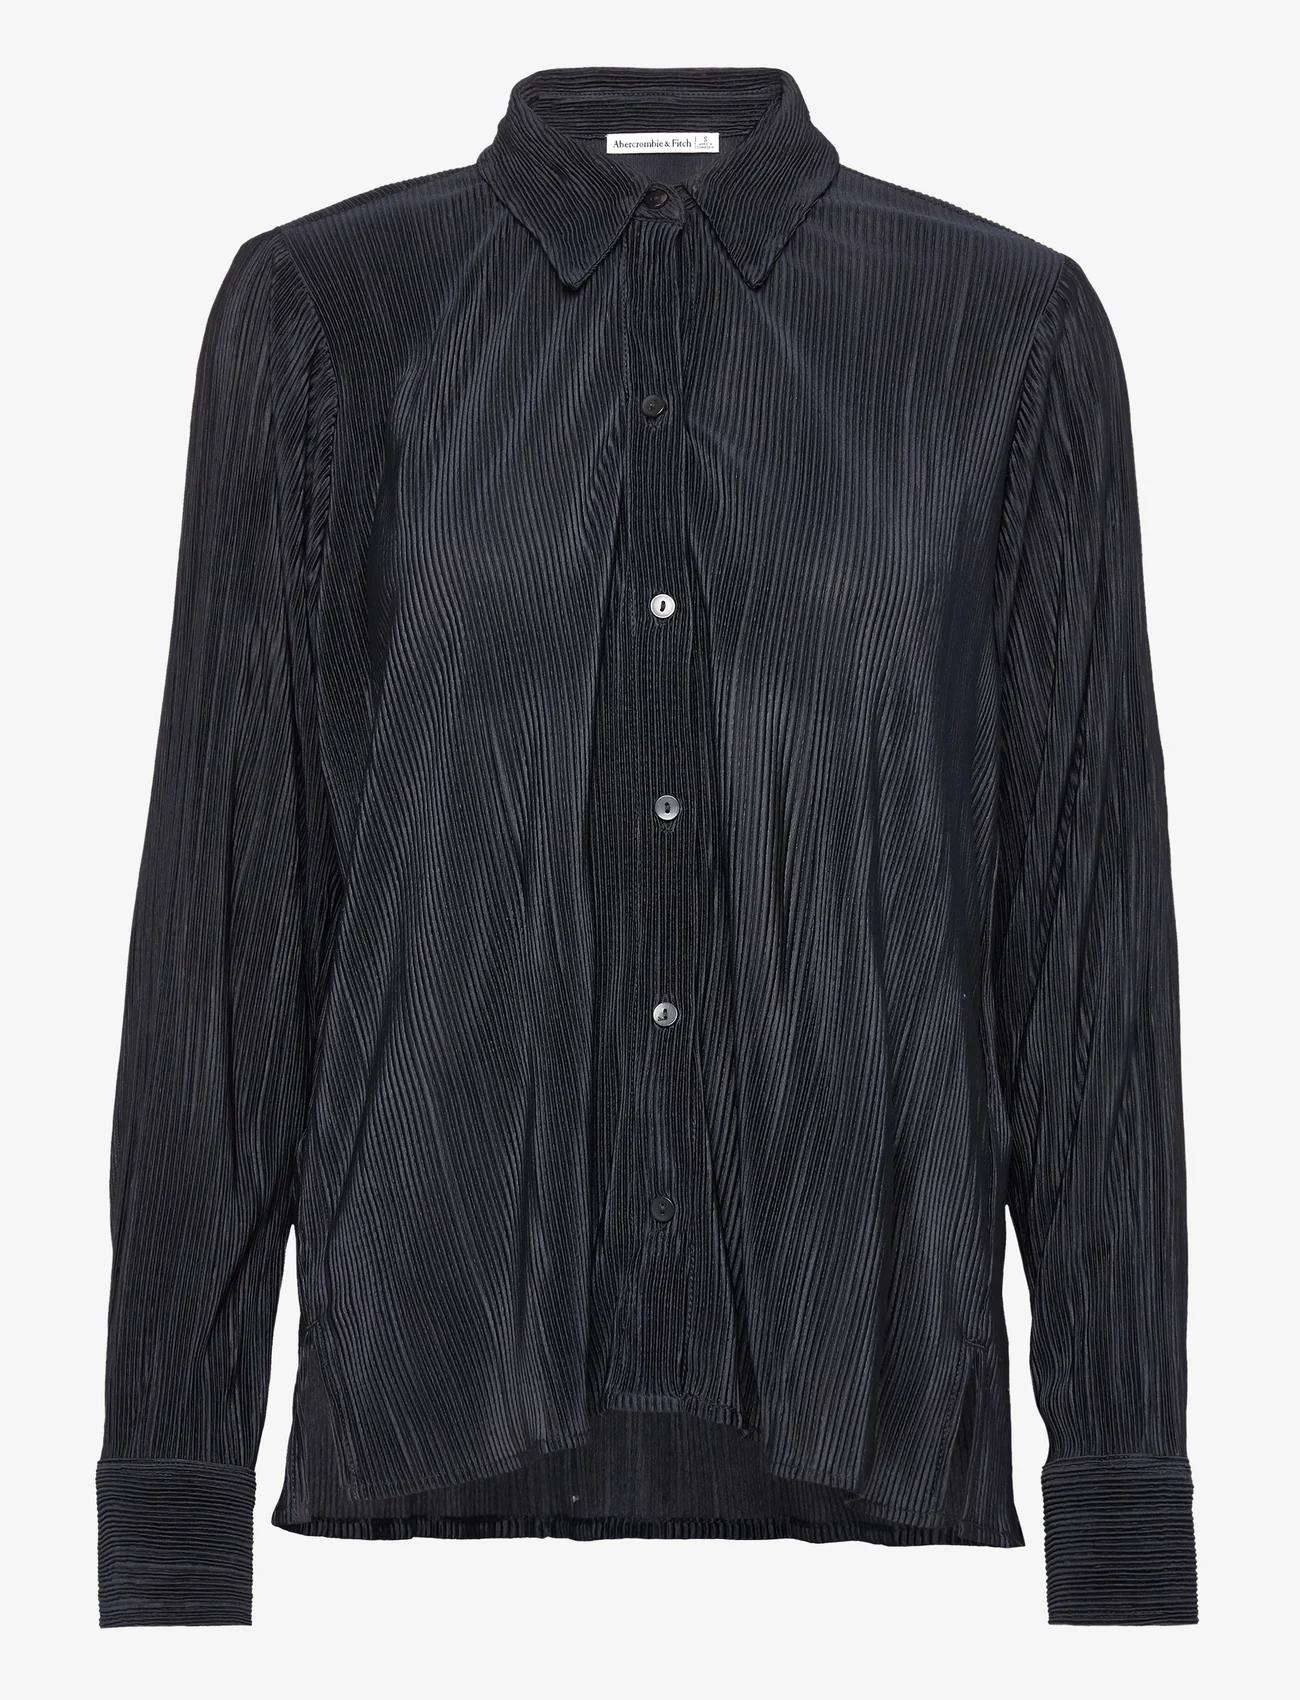 Abercrombie & Fitch - ANF WOMENS WOVENS - koszule z długimi rękawami - black beuaty - 0